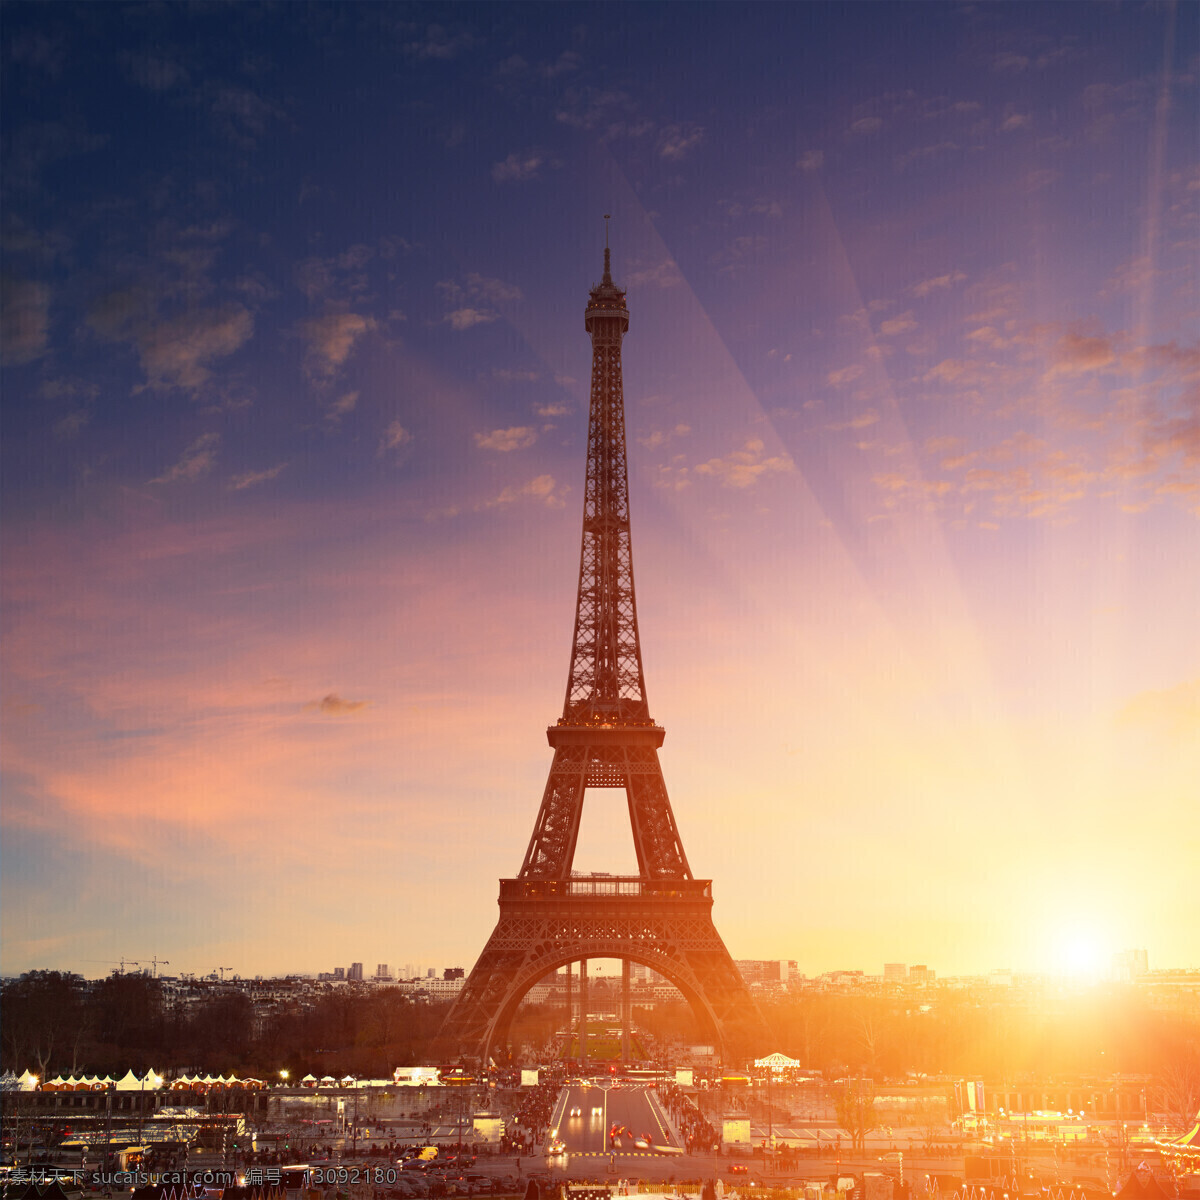 巴黎埃菲尔铁塔 埃菲尔铁塔 巴黎旅游景点 美丽风景 城市风景 建筑设计 环境家居 黄色